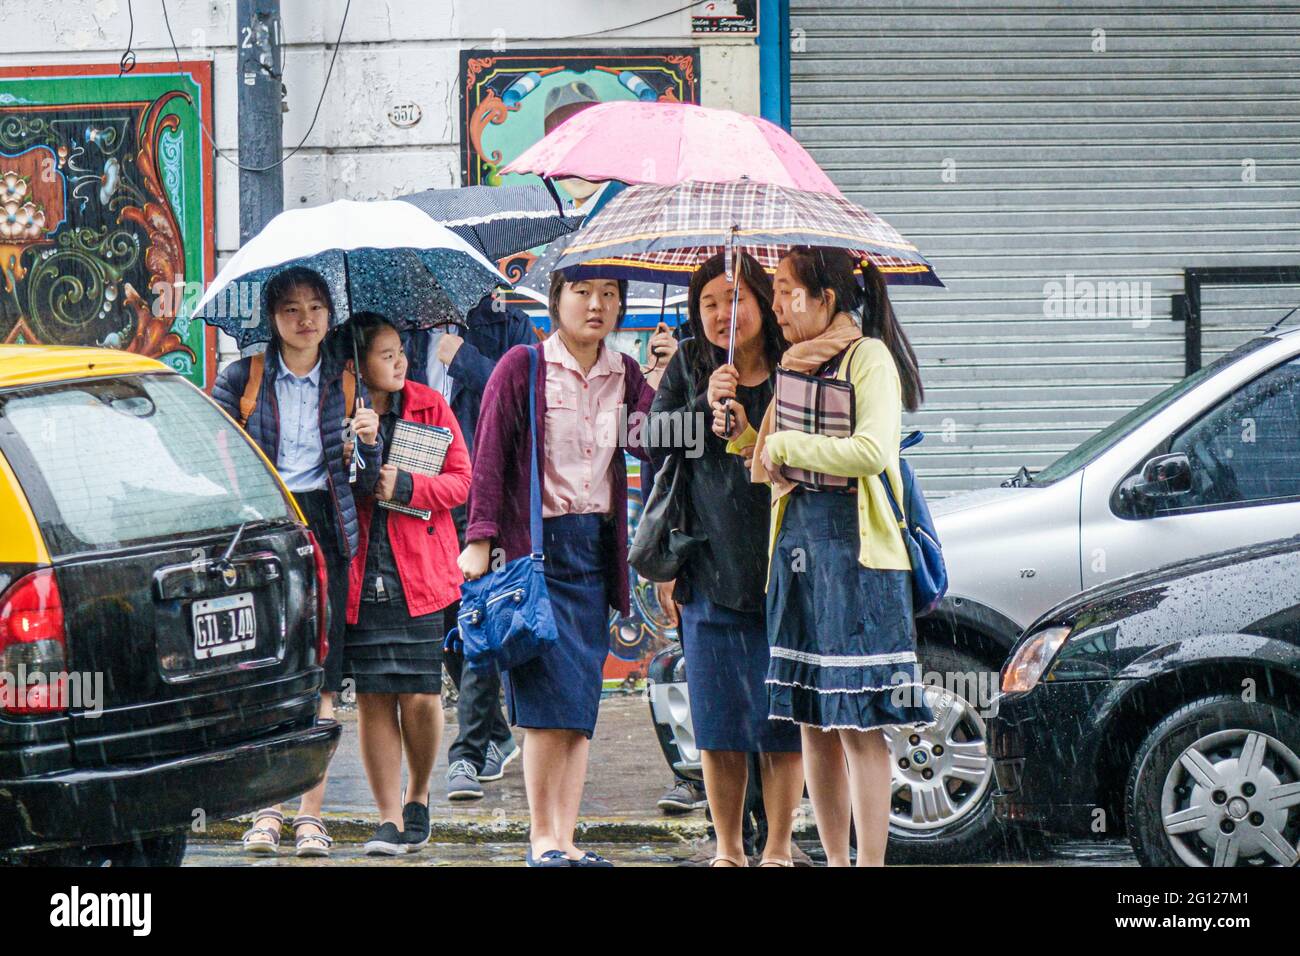 Argentine Buenos Aires San Telmo centre historique asiatique femmes touristes groupe tenant des parapluies traversant la rue pluie pluie pleurant jour des pluies Banque D'Images